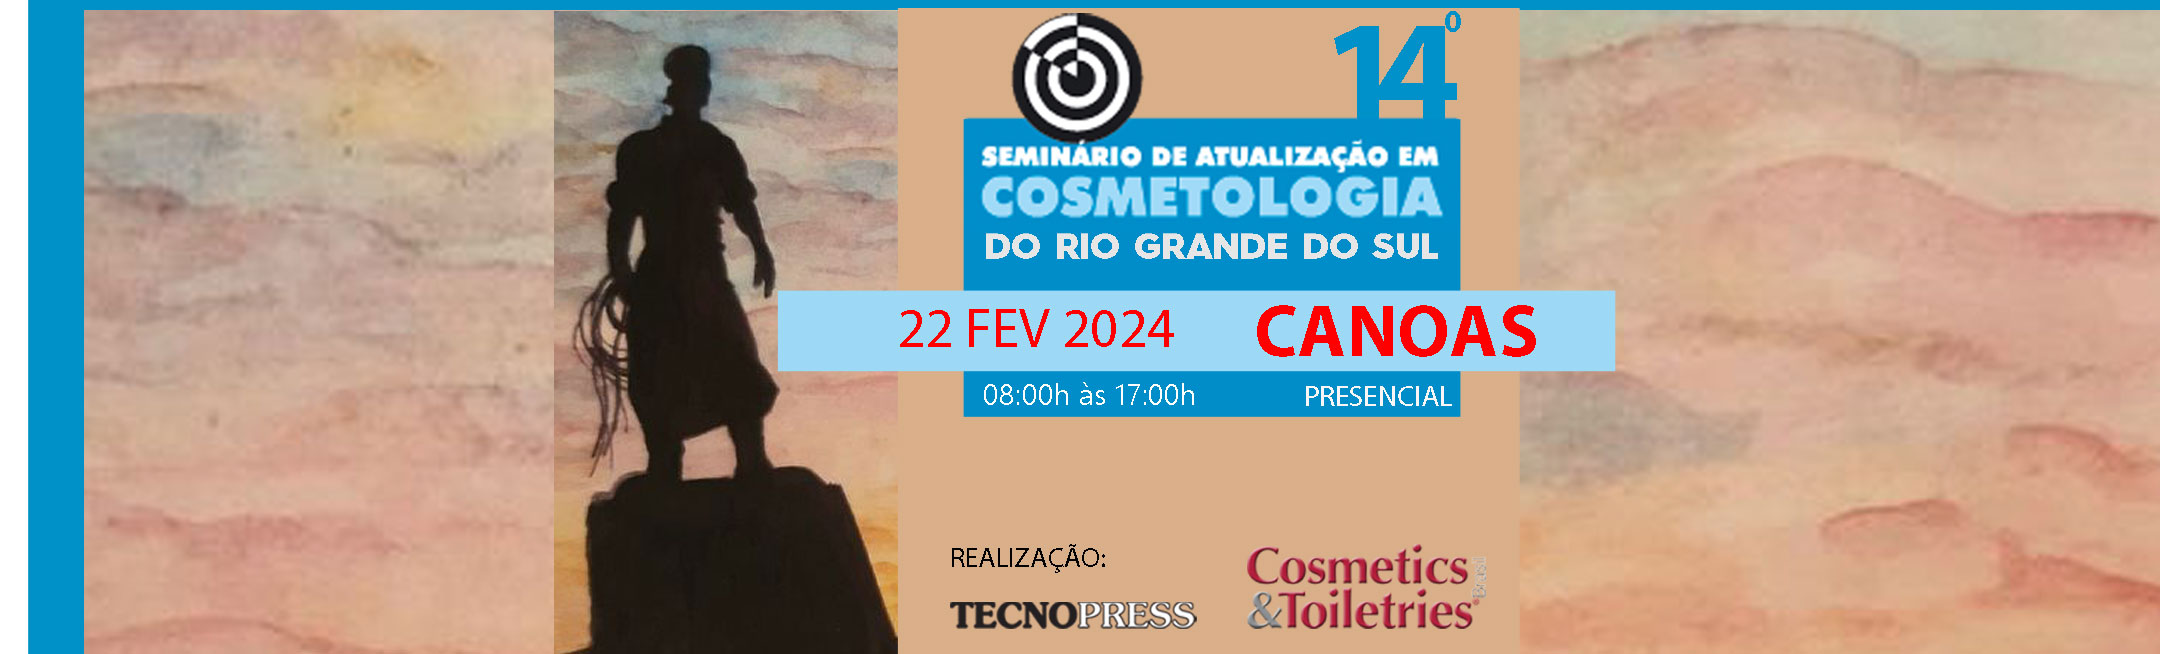 14º Seminário de Atualização em Cosmetologia do Rio Grande do Sul